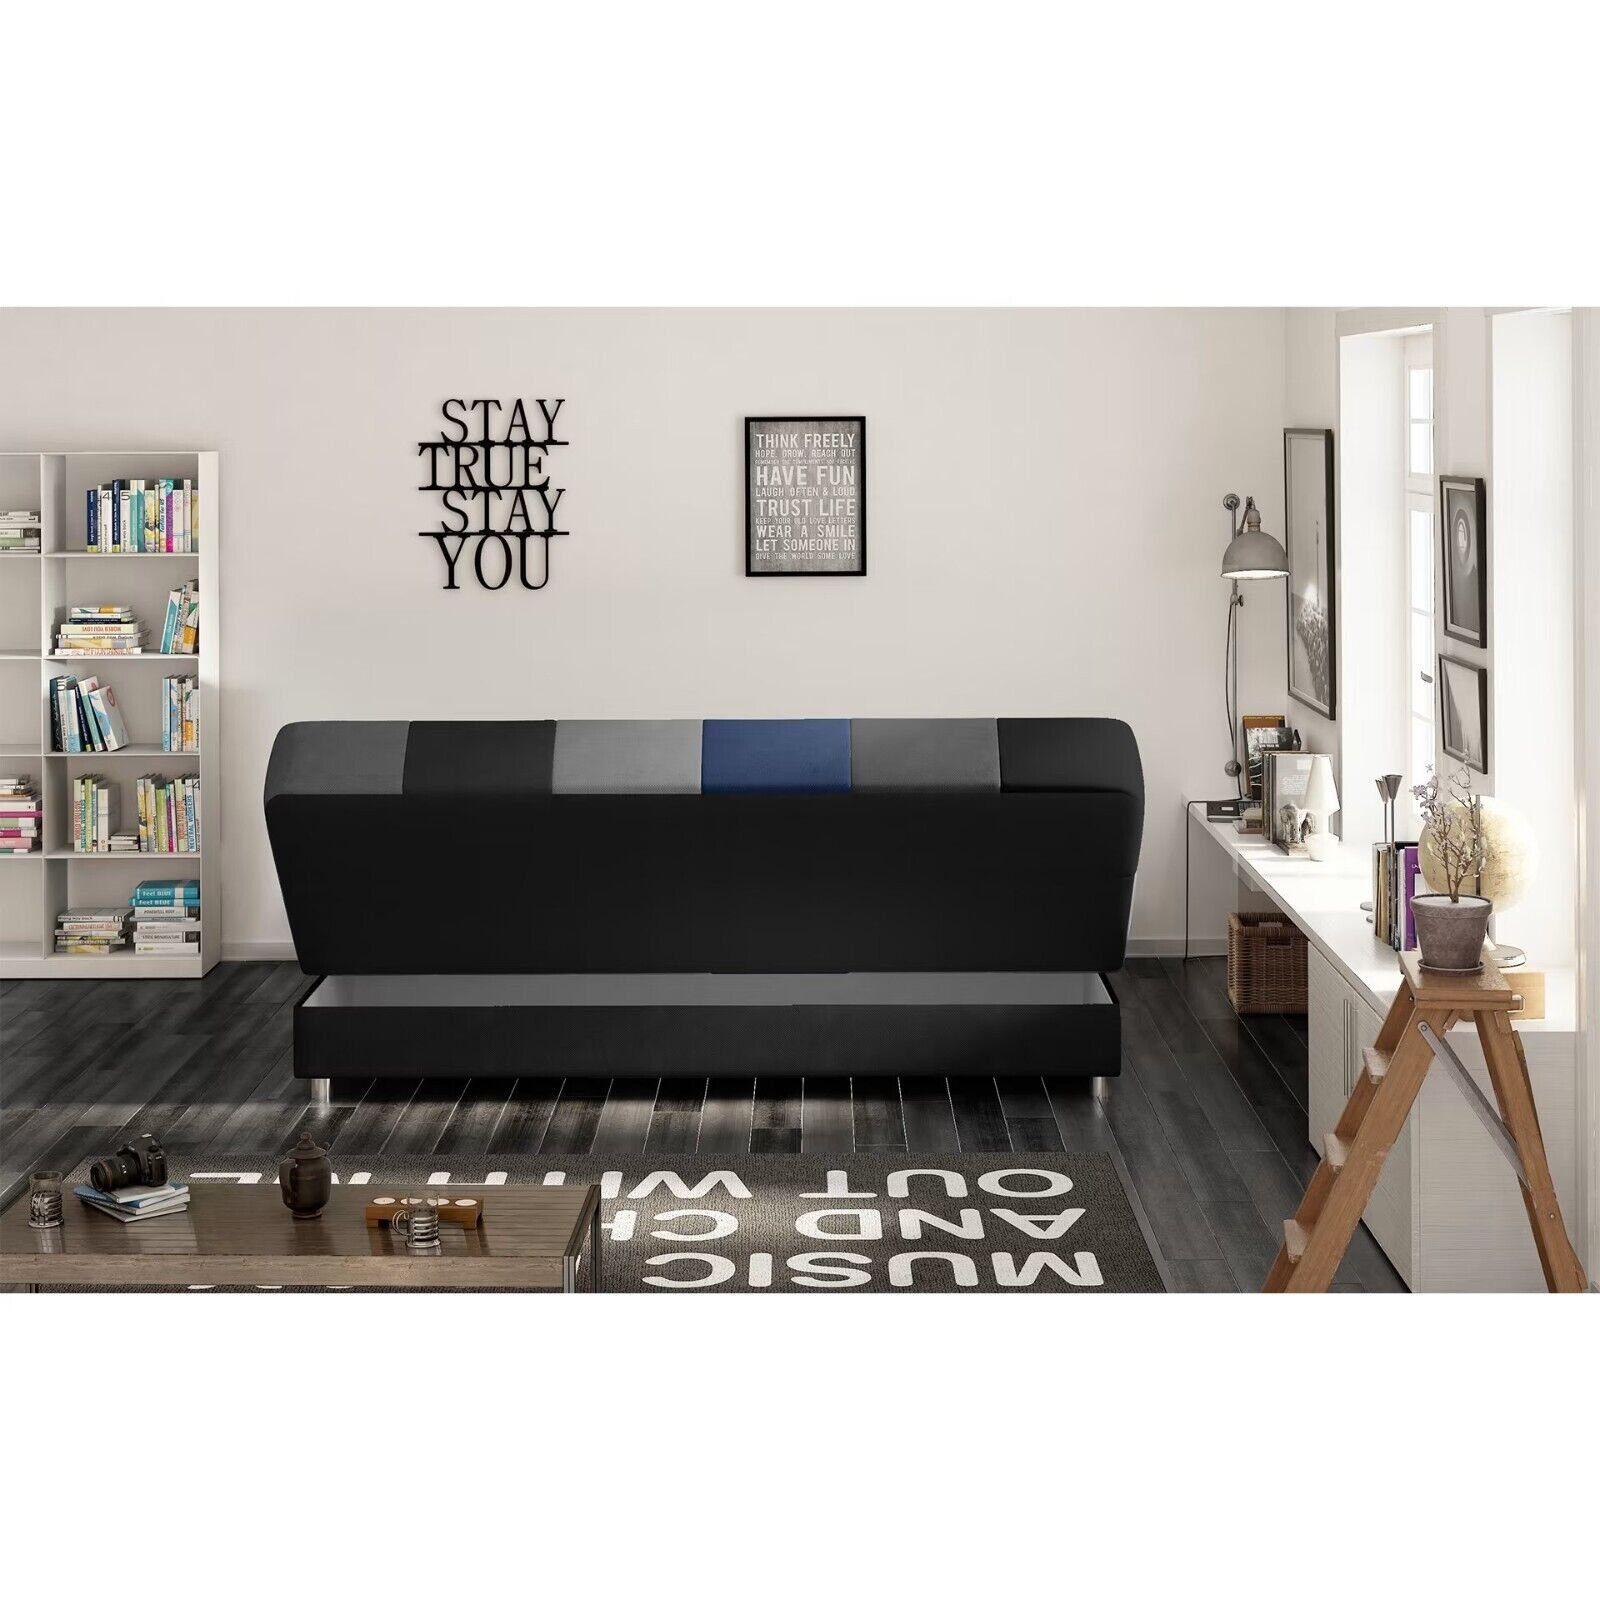 JVmoebel 3 Made Modern Wohnzimmer in Sitzer Luxus Sofa SOFORT, Teile, Couch Europa Sofa 1